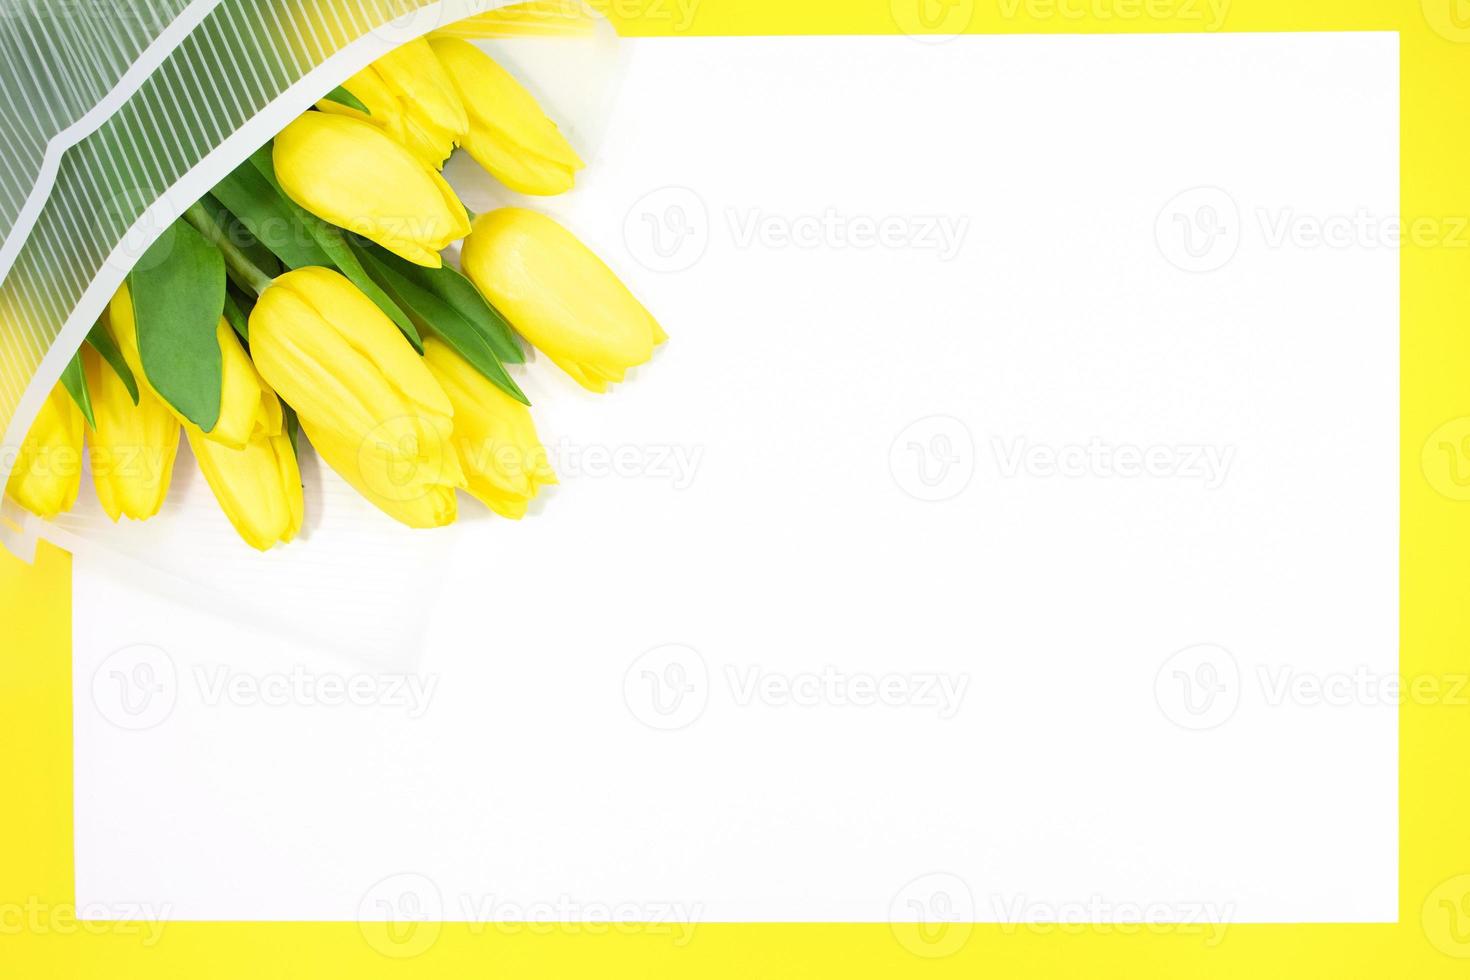 carte de vacances. bouquet de tulipes jaunes dans une enveloppe avec une feuille vierge pour le texte. joyeux anniversaire, mère, enseignant, journée internationale de la femme, 8 mars. espace de copie photo